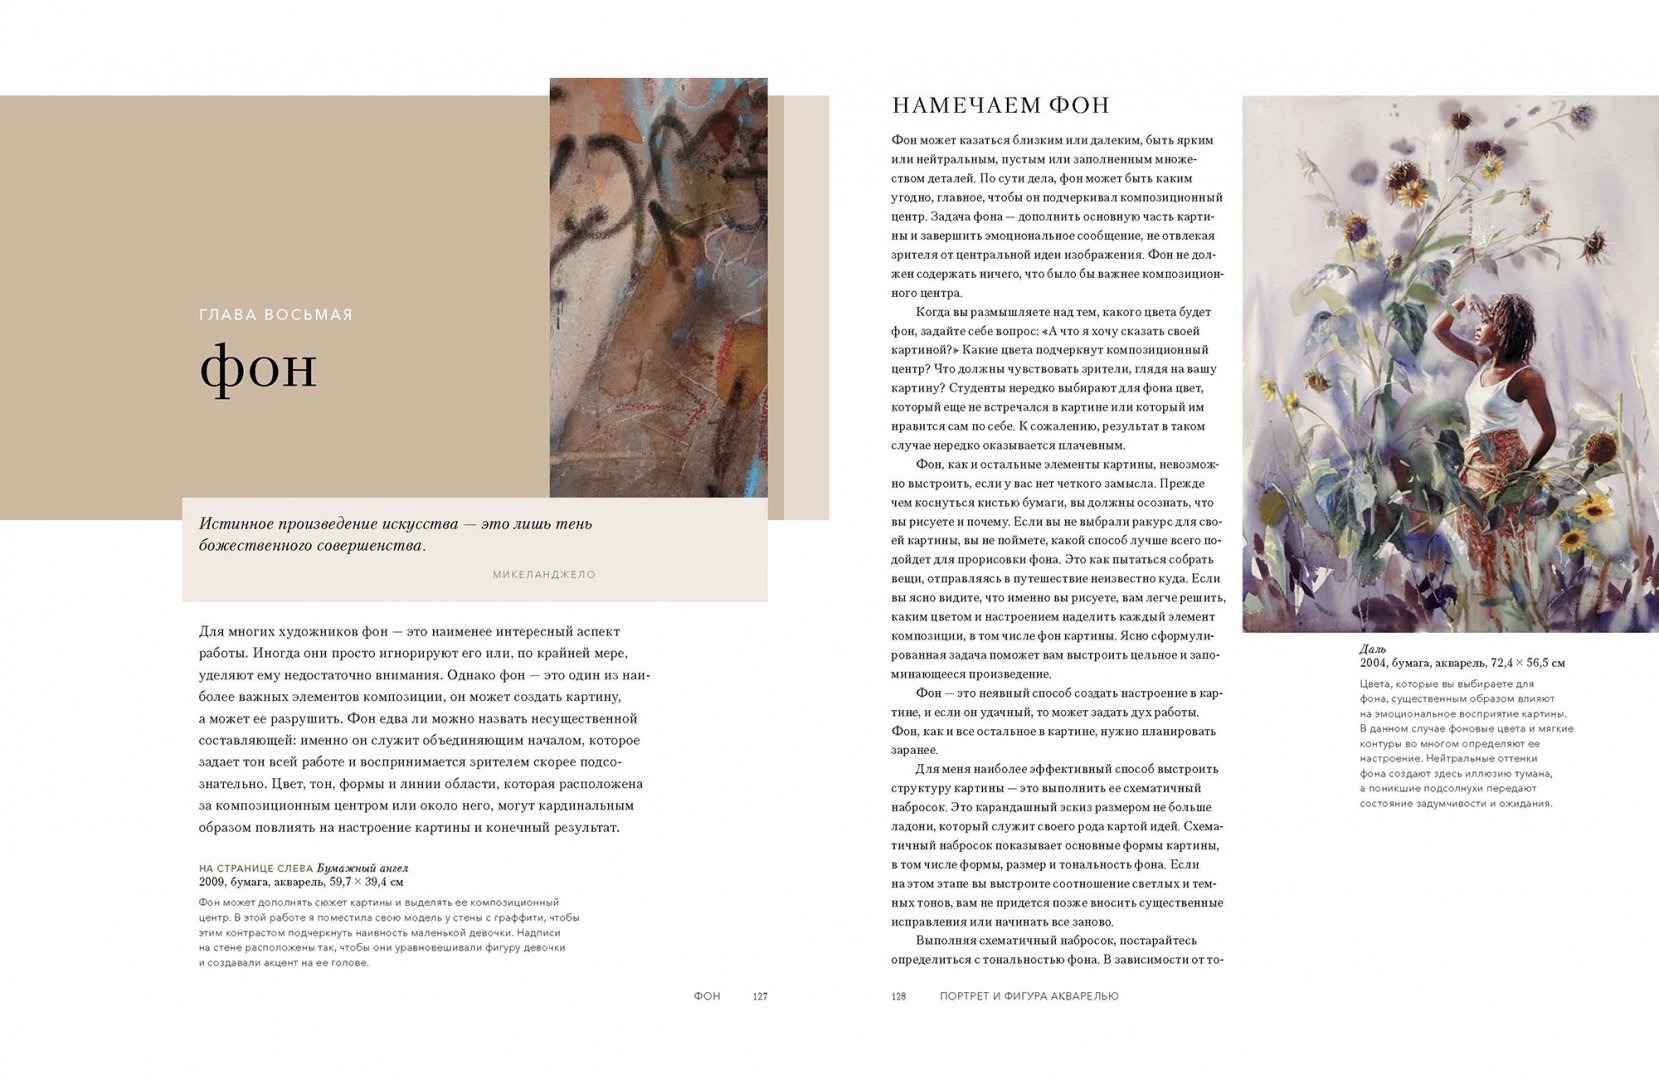 Просветленное искусство акварели Мэри Уайт: портреты и фигуры как воплощение душевного пути